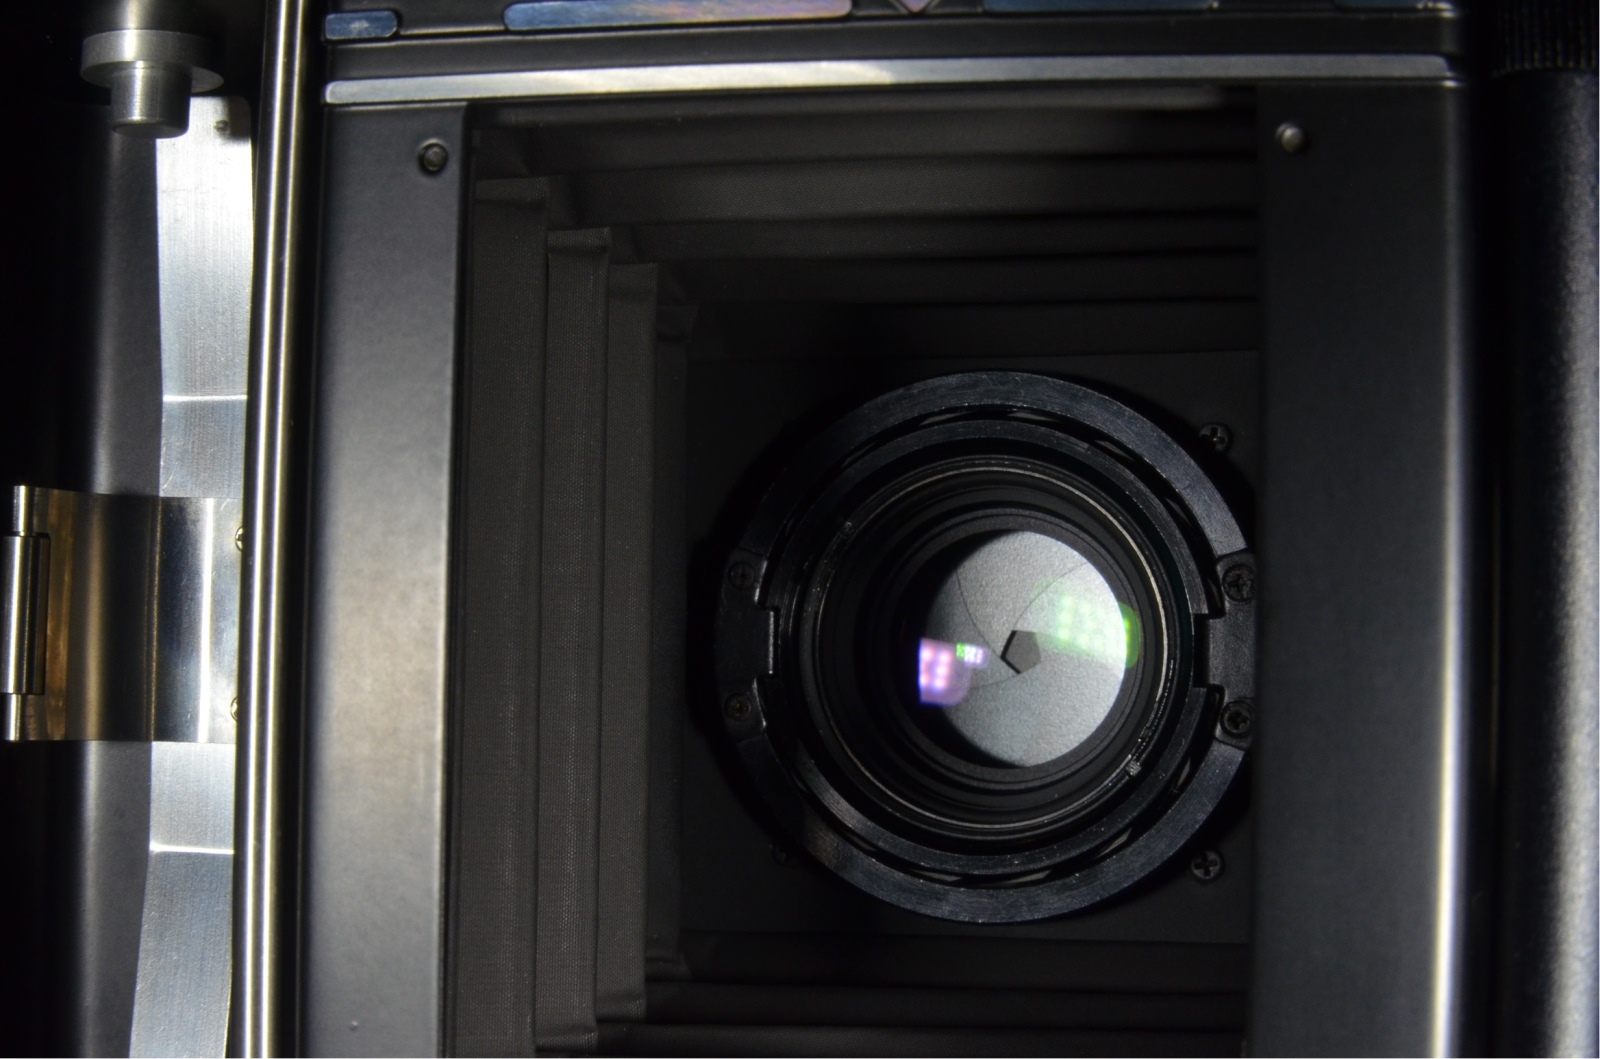 Fujifilm Fujica GS645 Pro Fujinon 75mm f3.4 Medium Format Film Camera #